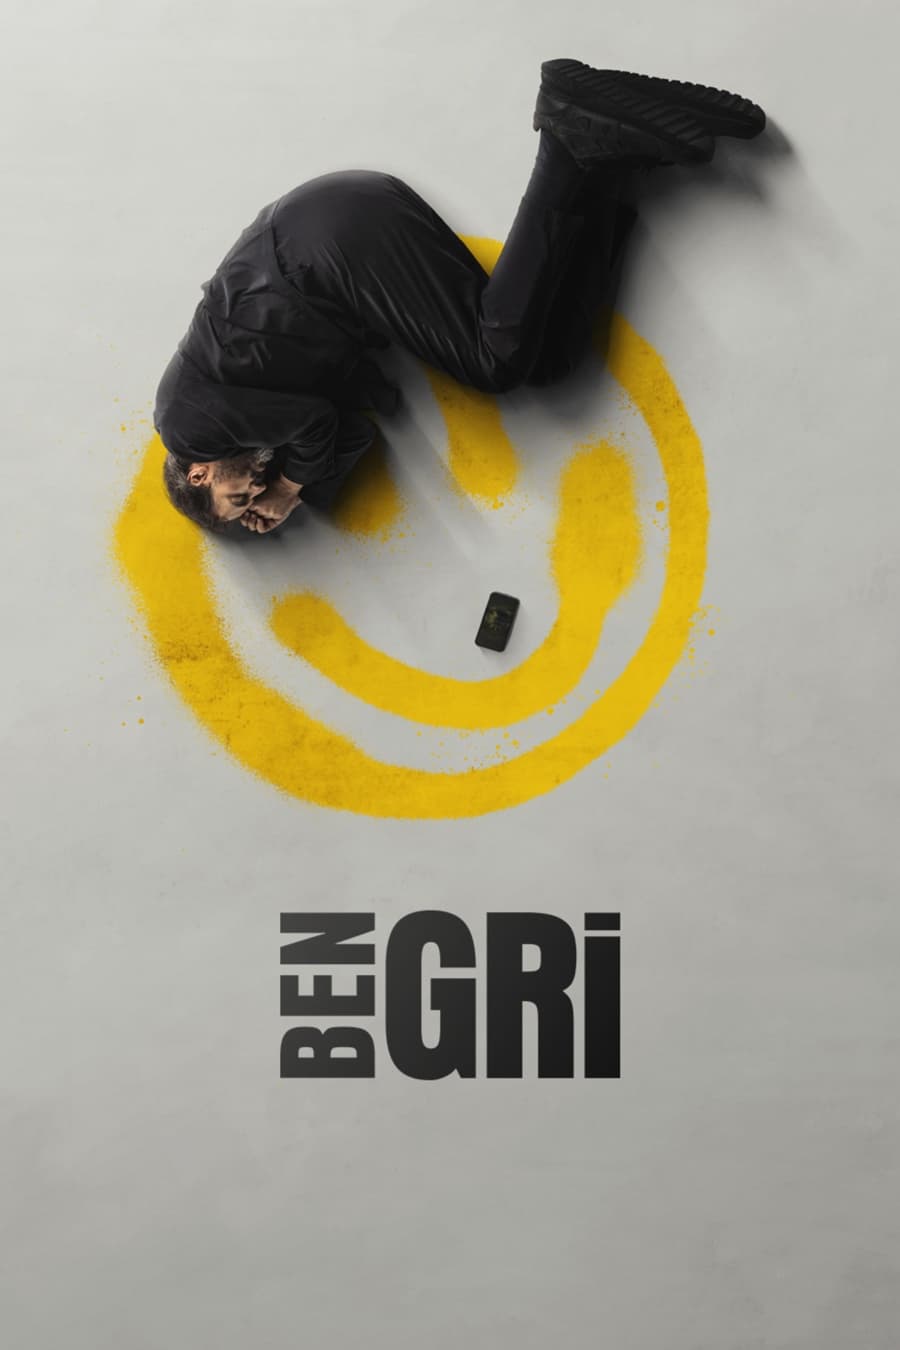 TV ratings for Ben Gri in India. Disney+ TV series